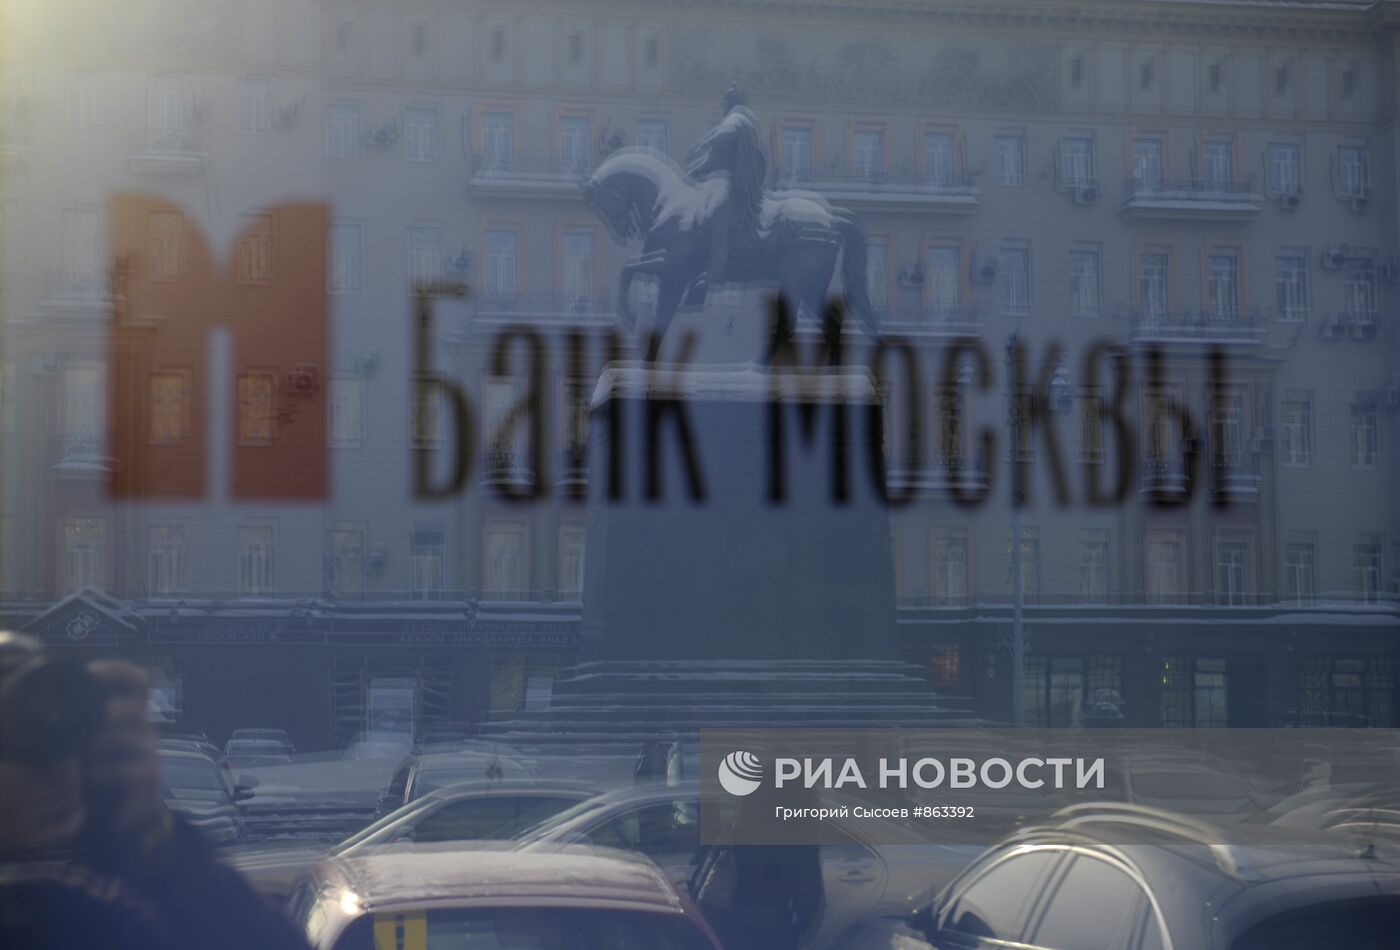 Отделение "Банка Москвы" на Тверской улице